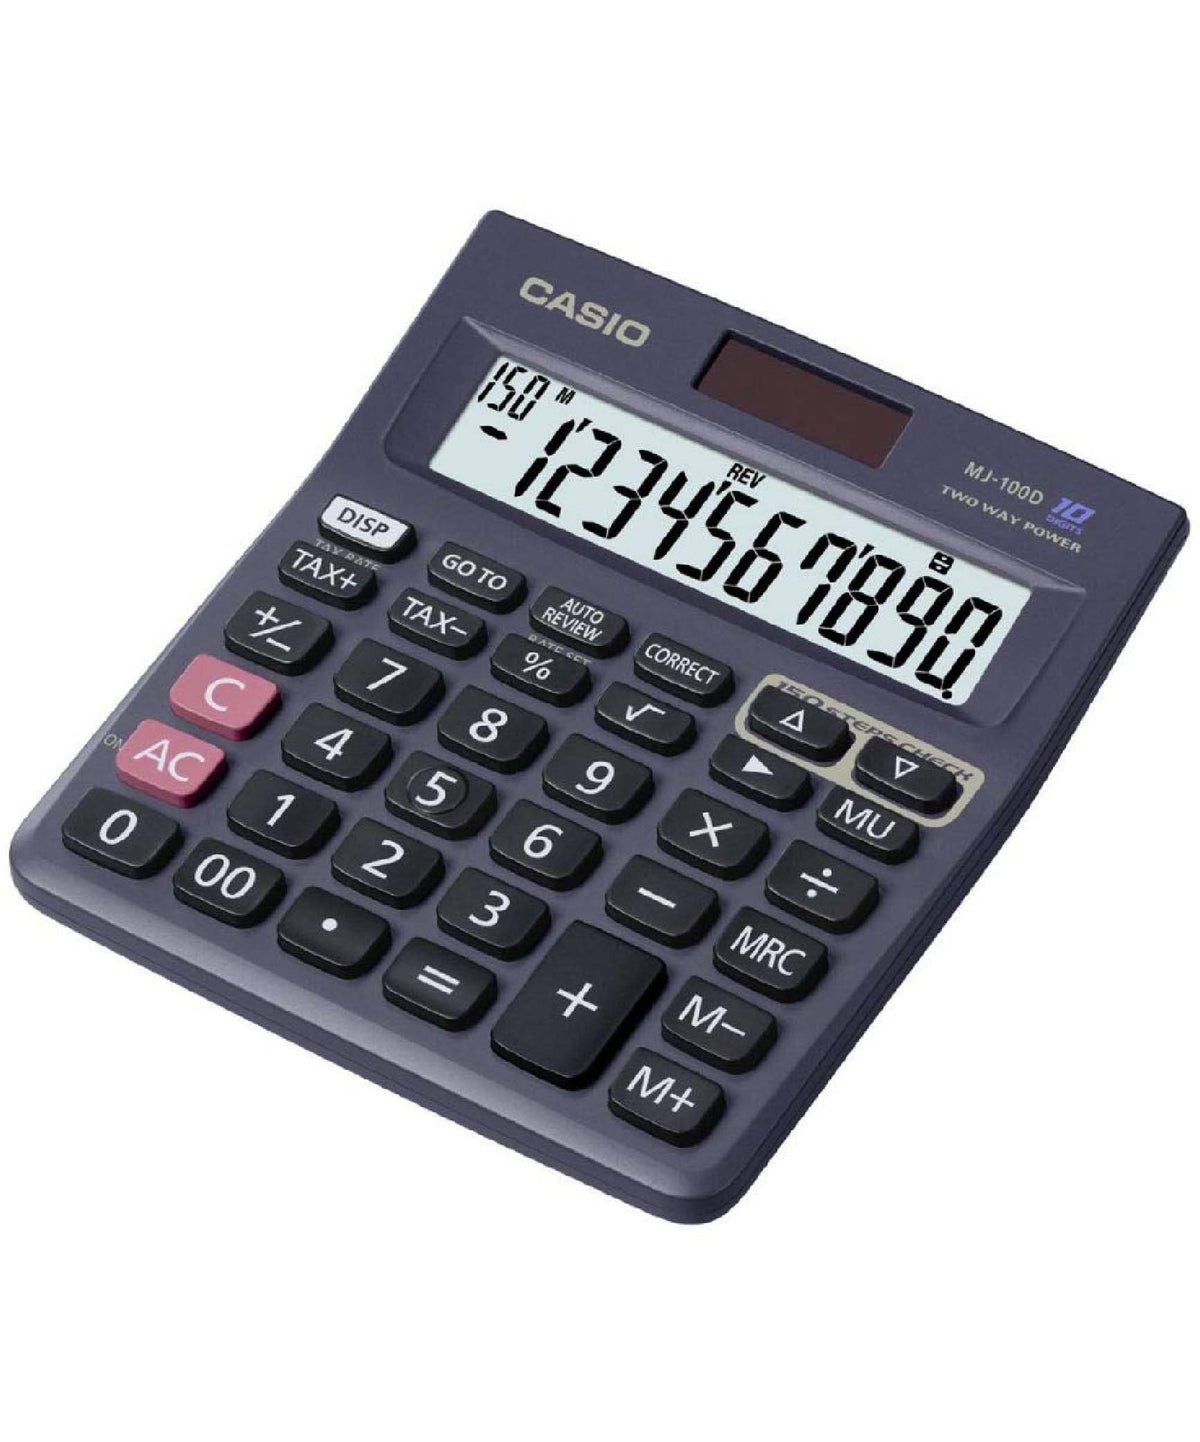 Casio Practical Calculator, MJ100 